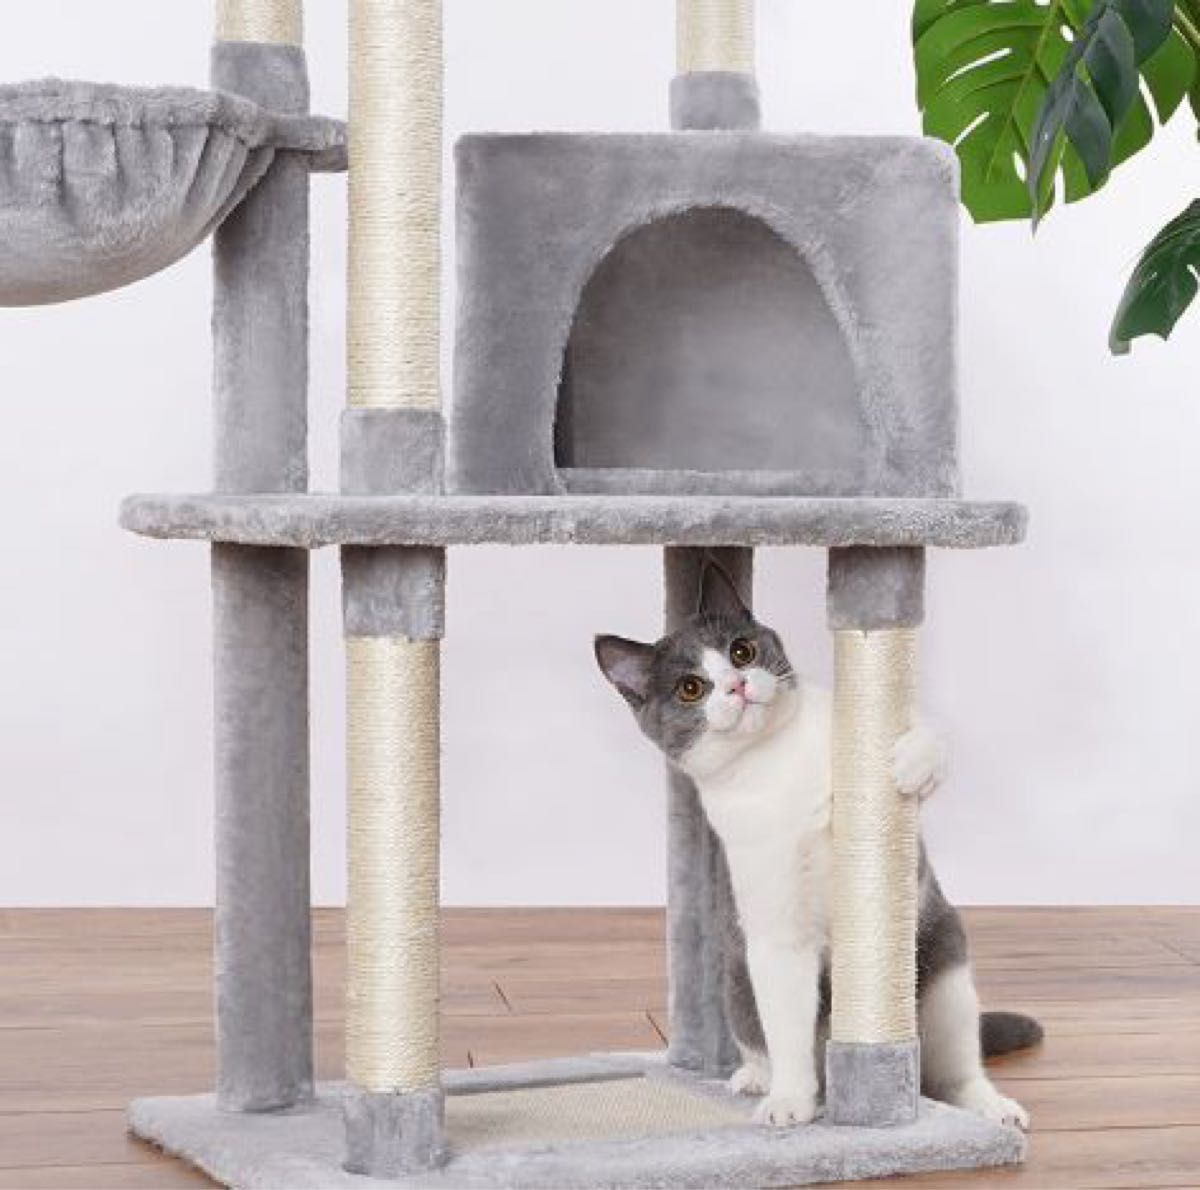 キャットタワー スリム 据え置き 高さ120cm 日本語説明書付き 大型猫 おしゃれ グレー色 キャットツリー 猫タワー送料無料